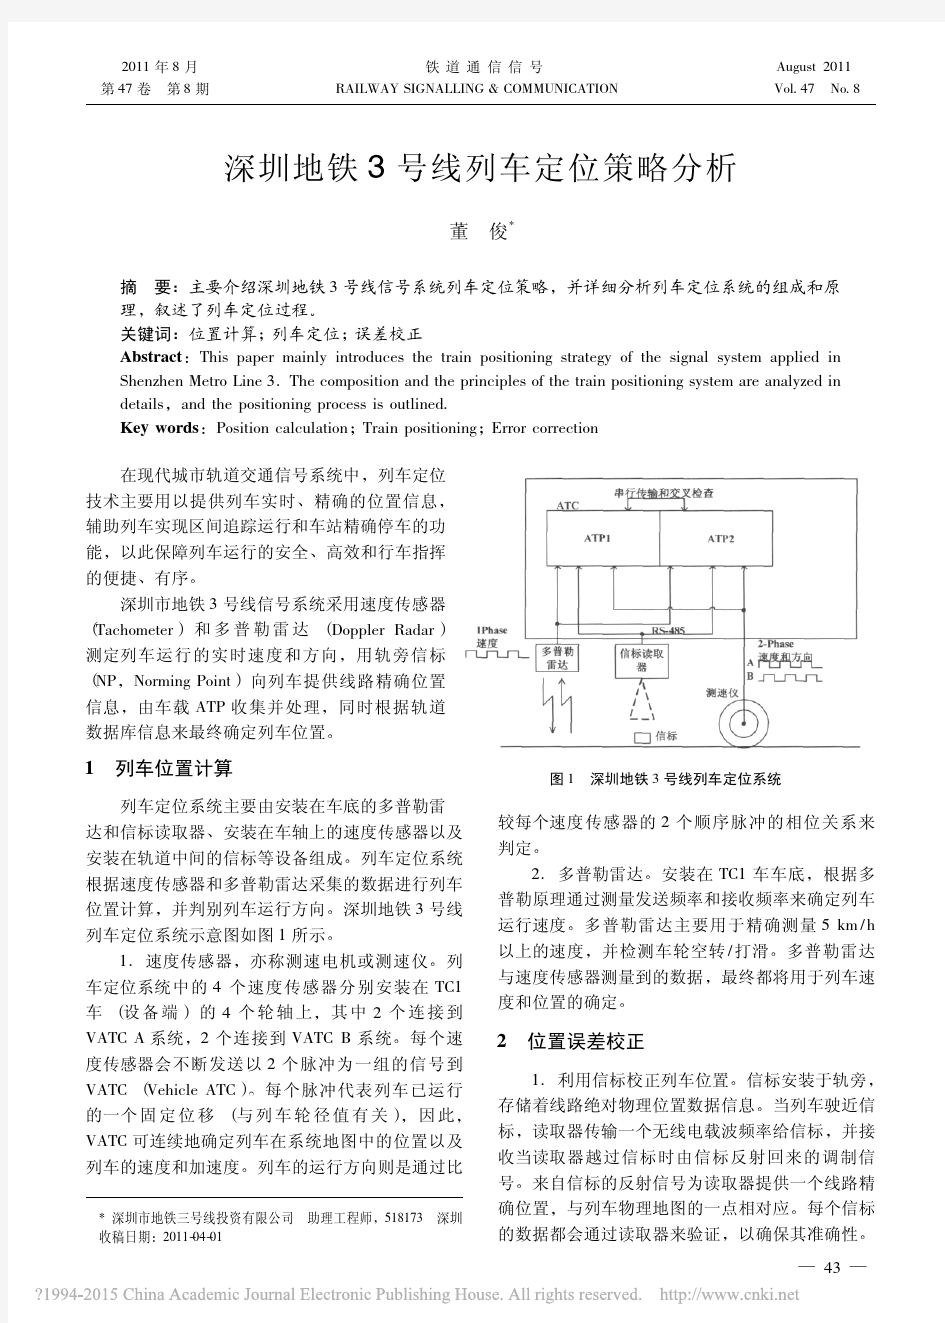 深圳地铁3号线列车定位策略分析